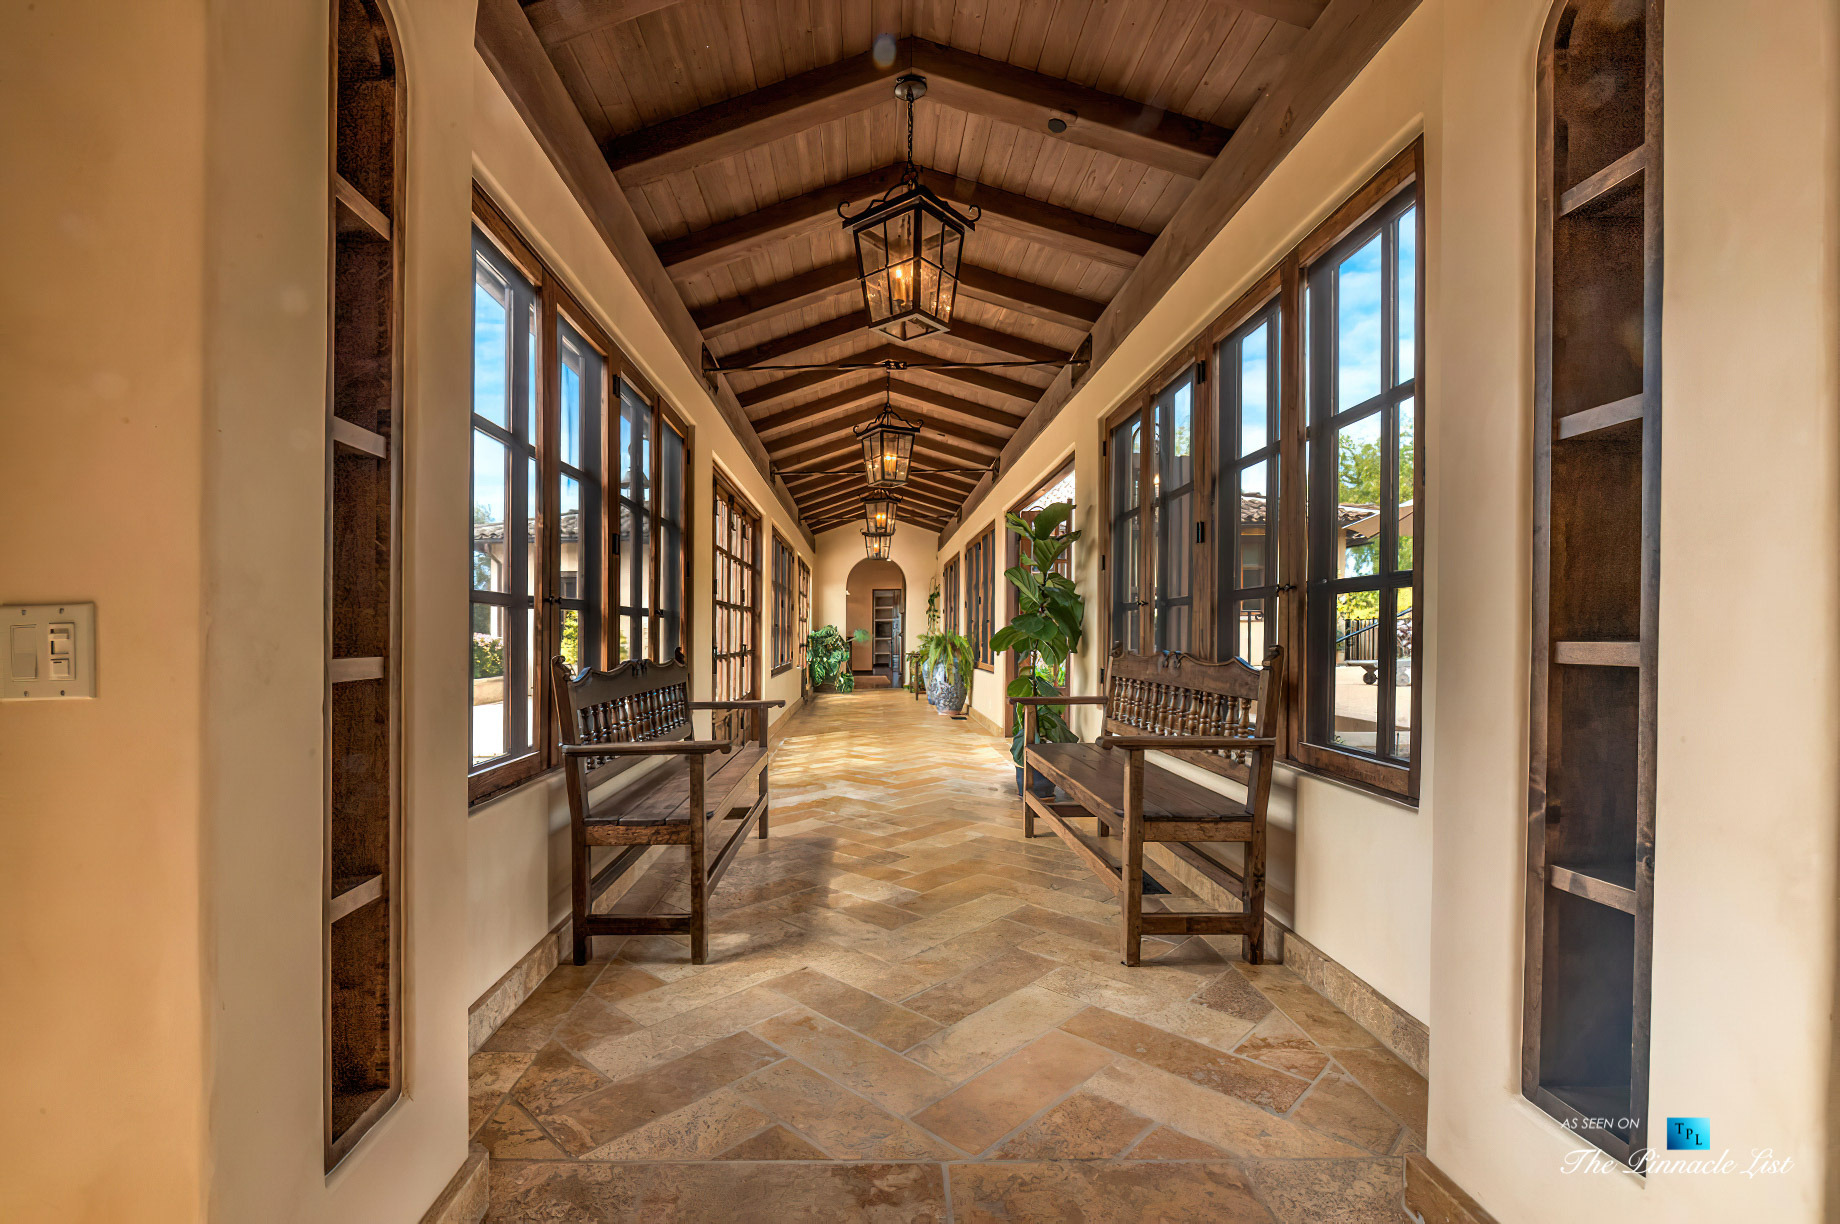 Spectacular 251 Acre Twin Oak Ranch - 2667 Via De Los Ranchos, Los Olivos, CA, USA - Italian Villa Residence Interior Hallway